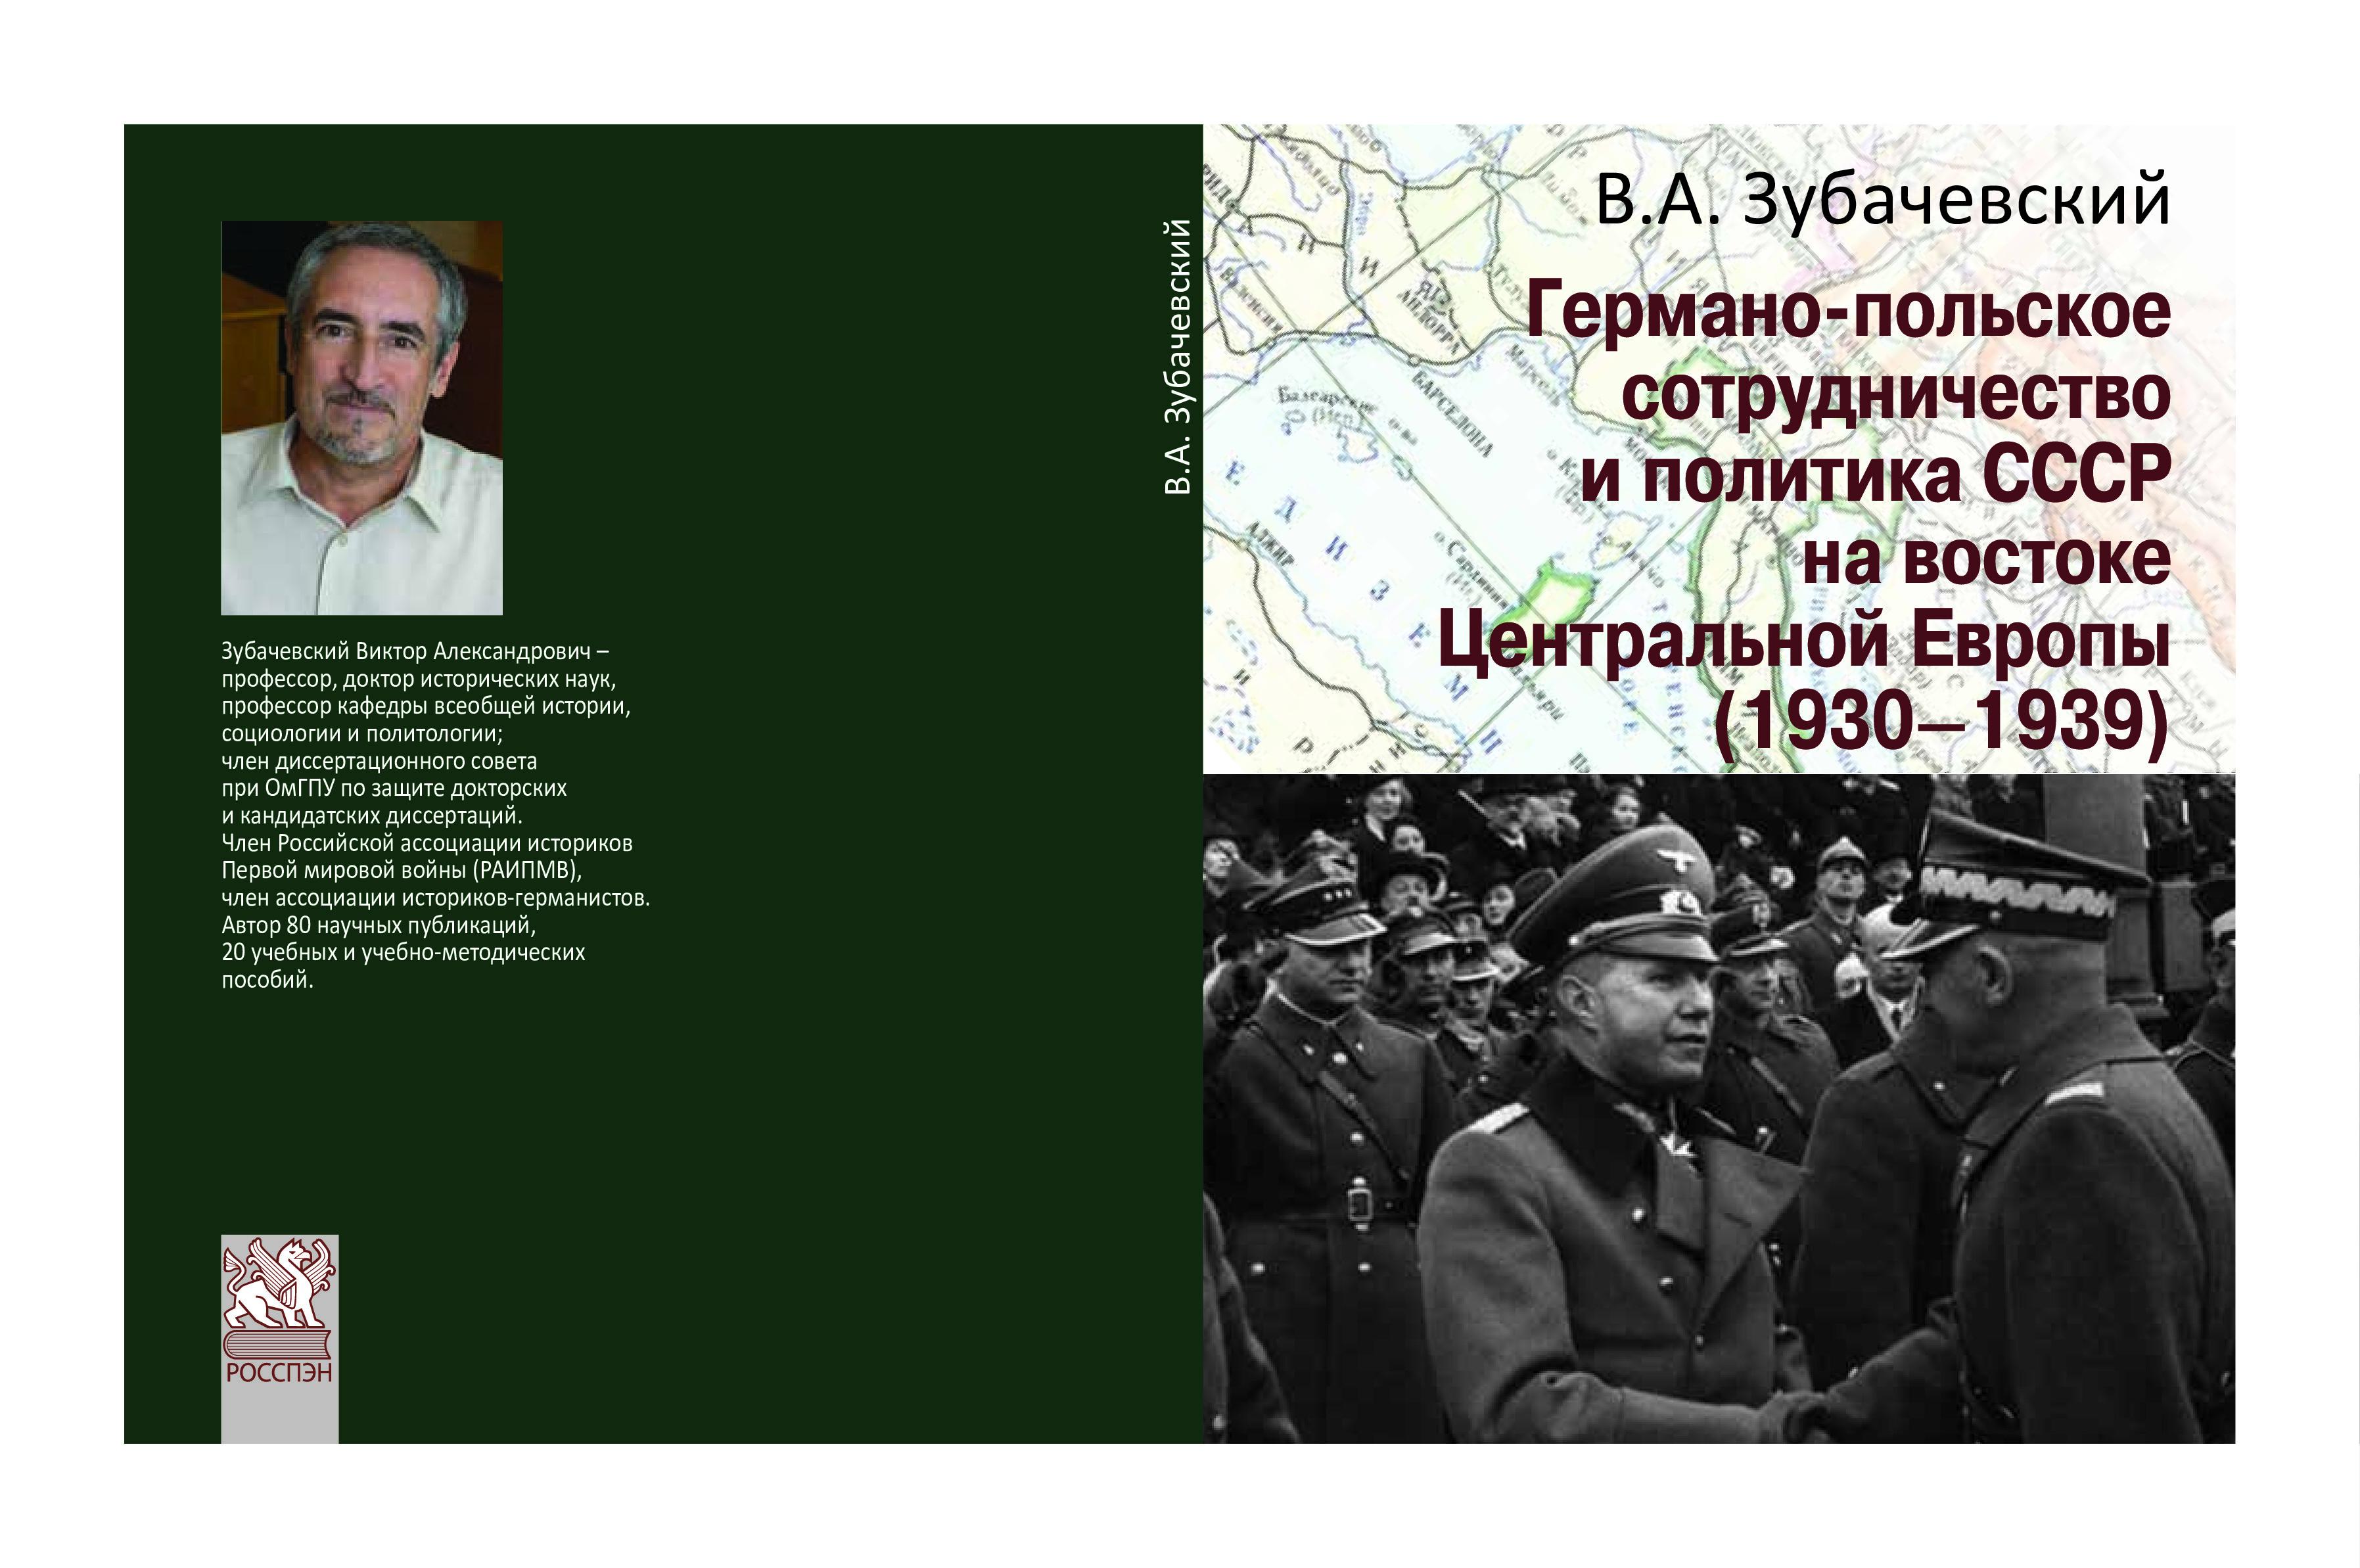 Германо-польское сотрудничество и политика СССР на востоке Центральной Европы (1930–1939)